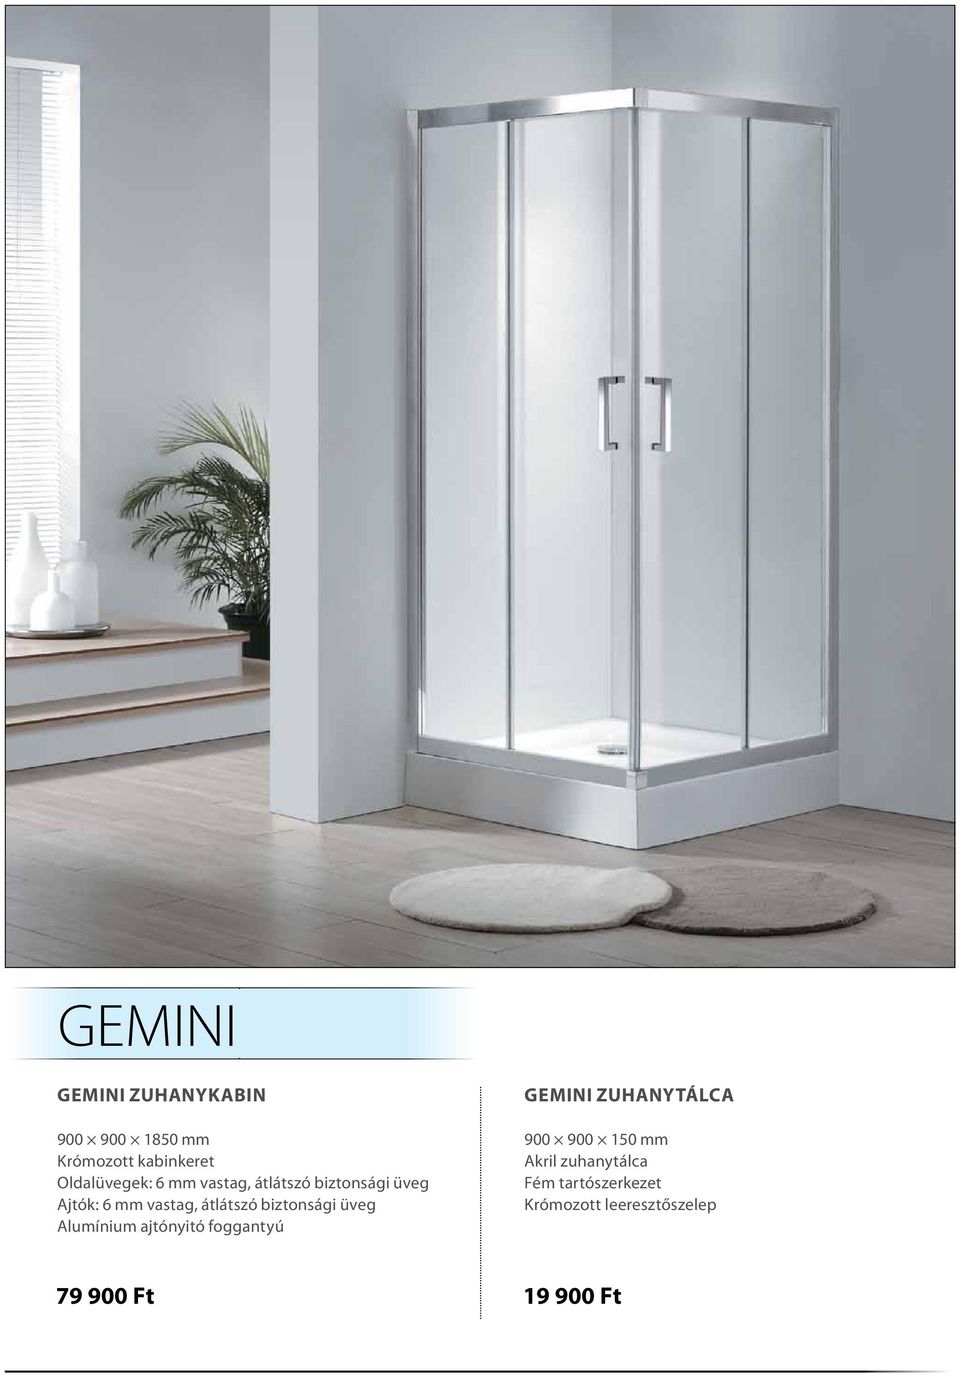 biztonsági üveg Alumínium ajtónyitó foggantyú GEMINI zuhanytálca 900 900 150